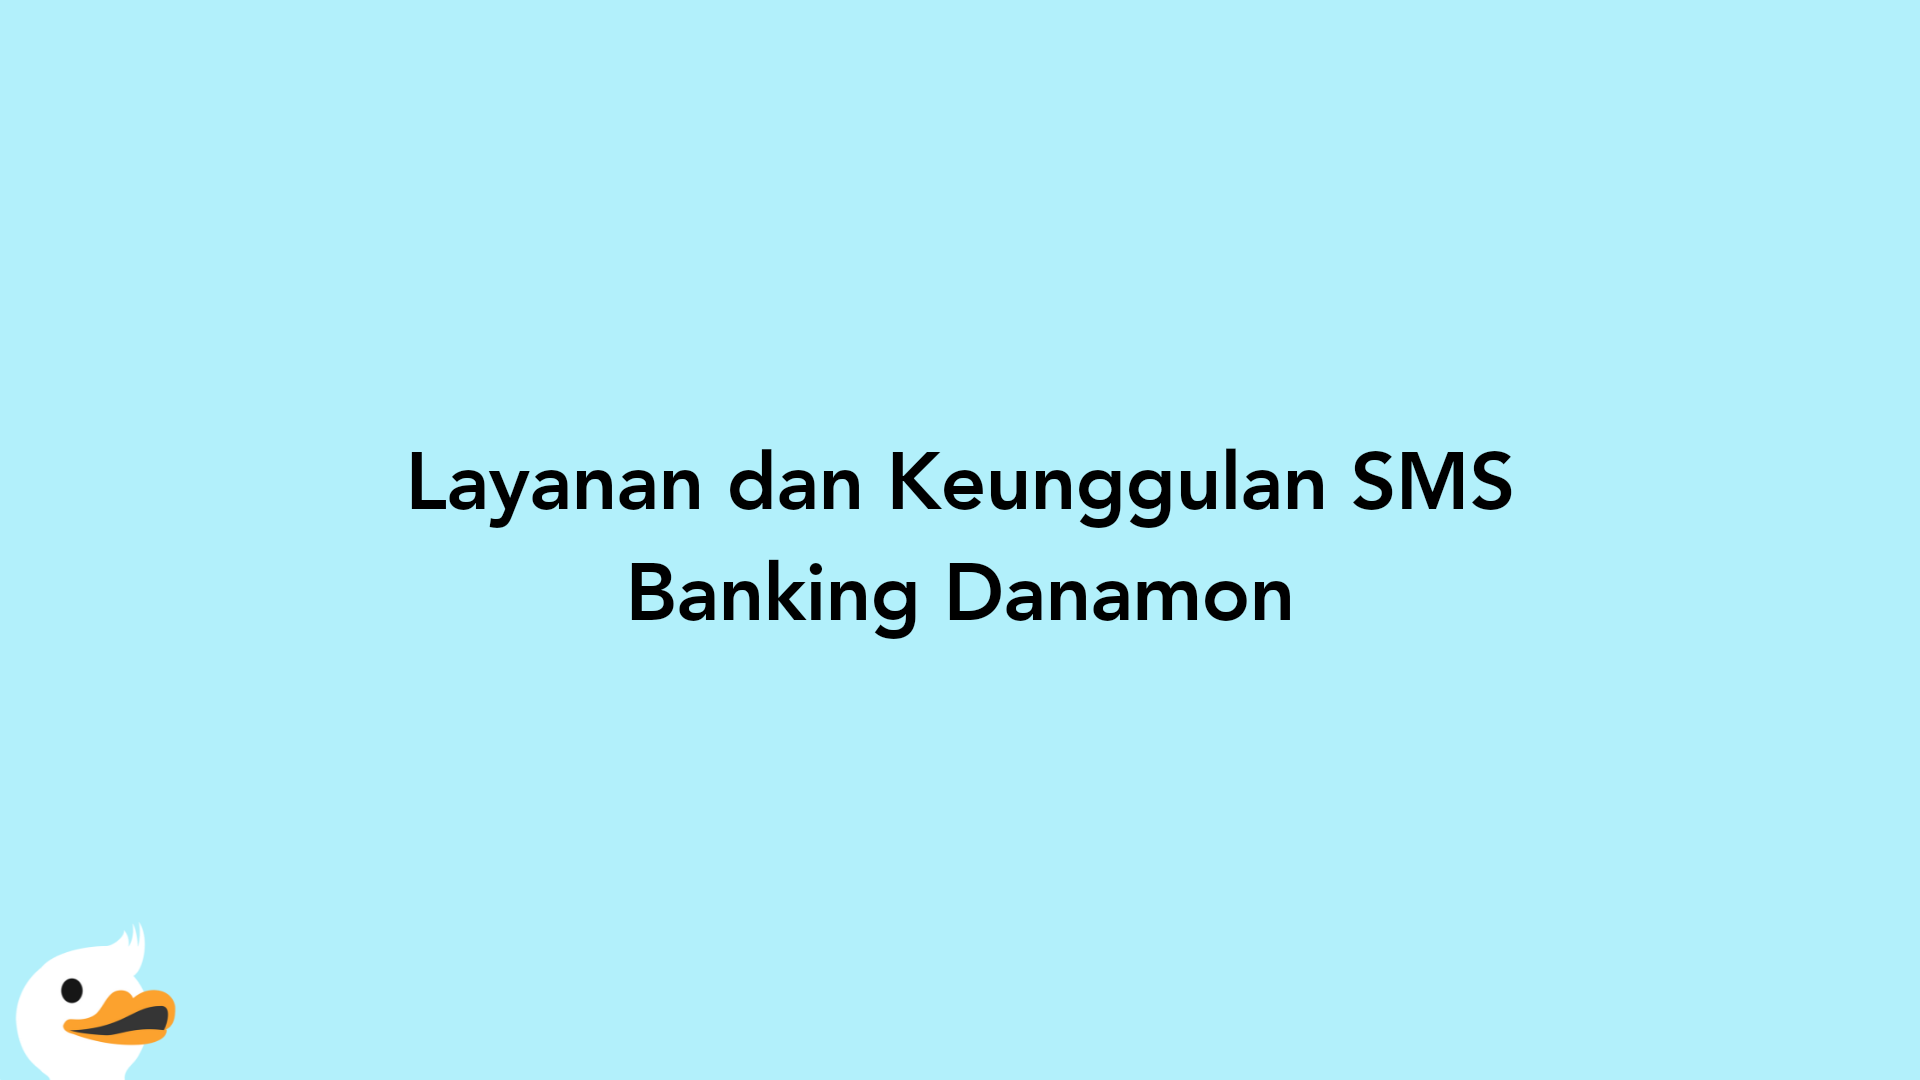 Layanan dan Keunggulan SMS Banking Danamon